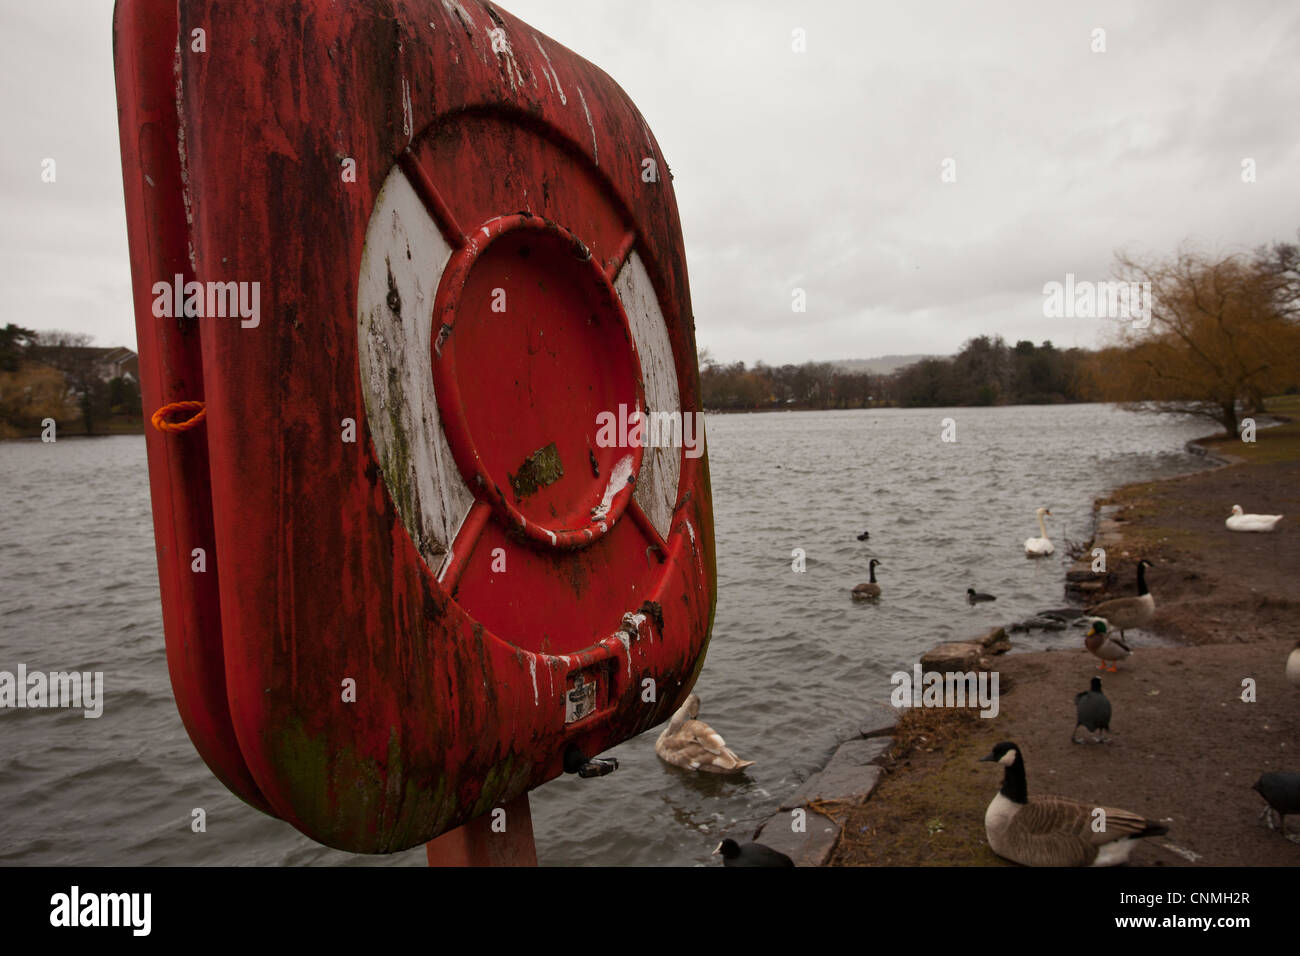 Anillo de vida en un lago con embarcadero, salvavidas utilizados por posados pájaros cubiertos de excrementos de las aves. Foto de stock